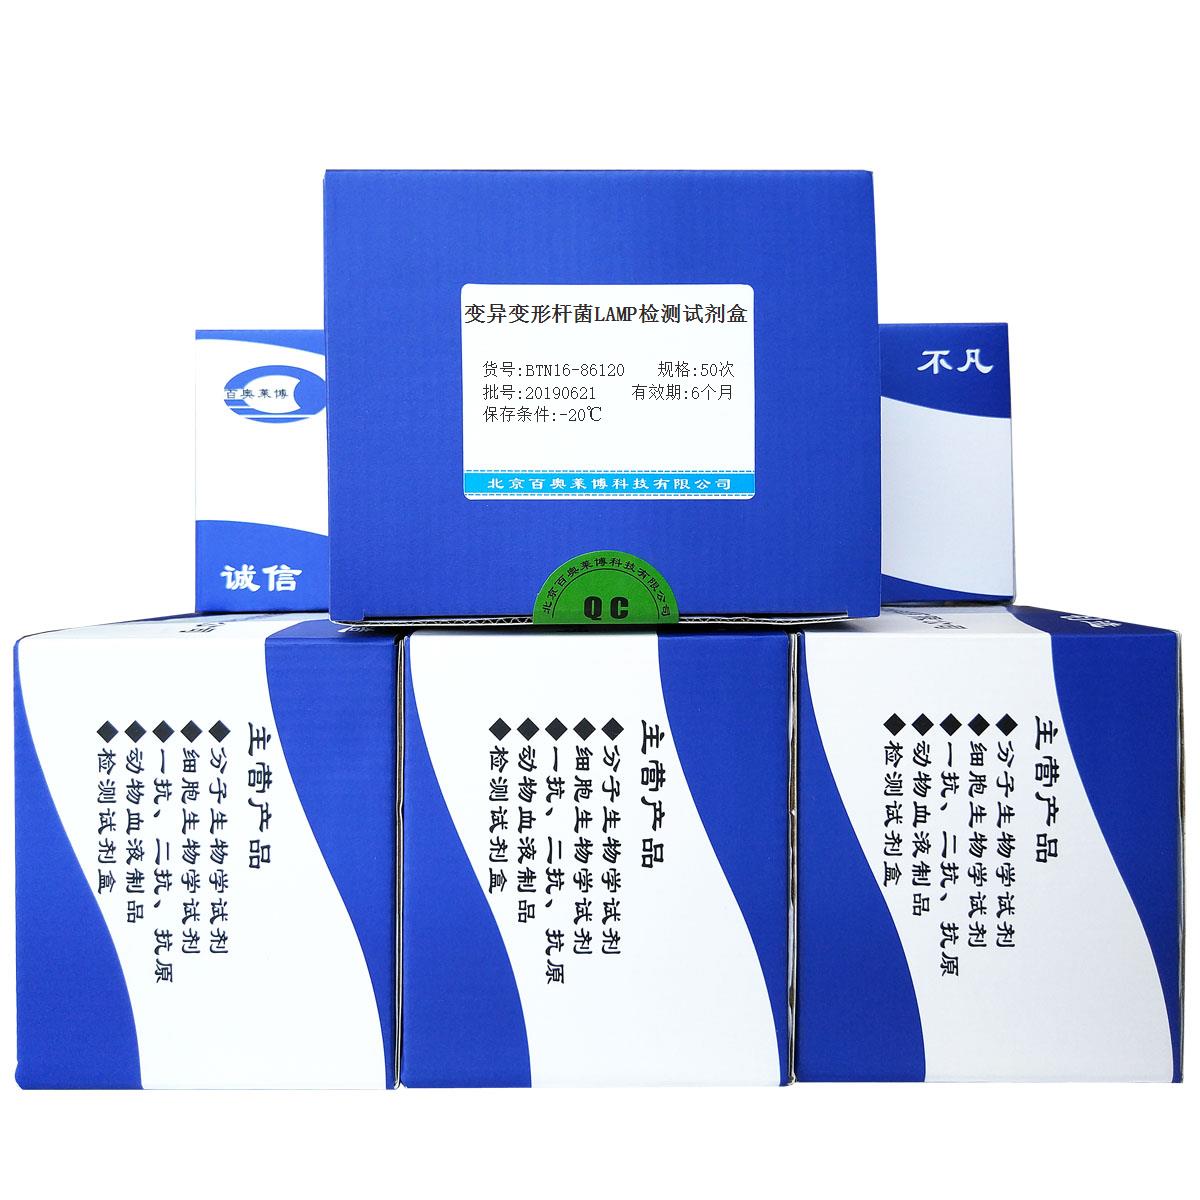 变异变形杆菌LAMP检测试剂盒北京现货